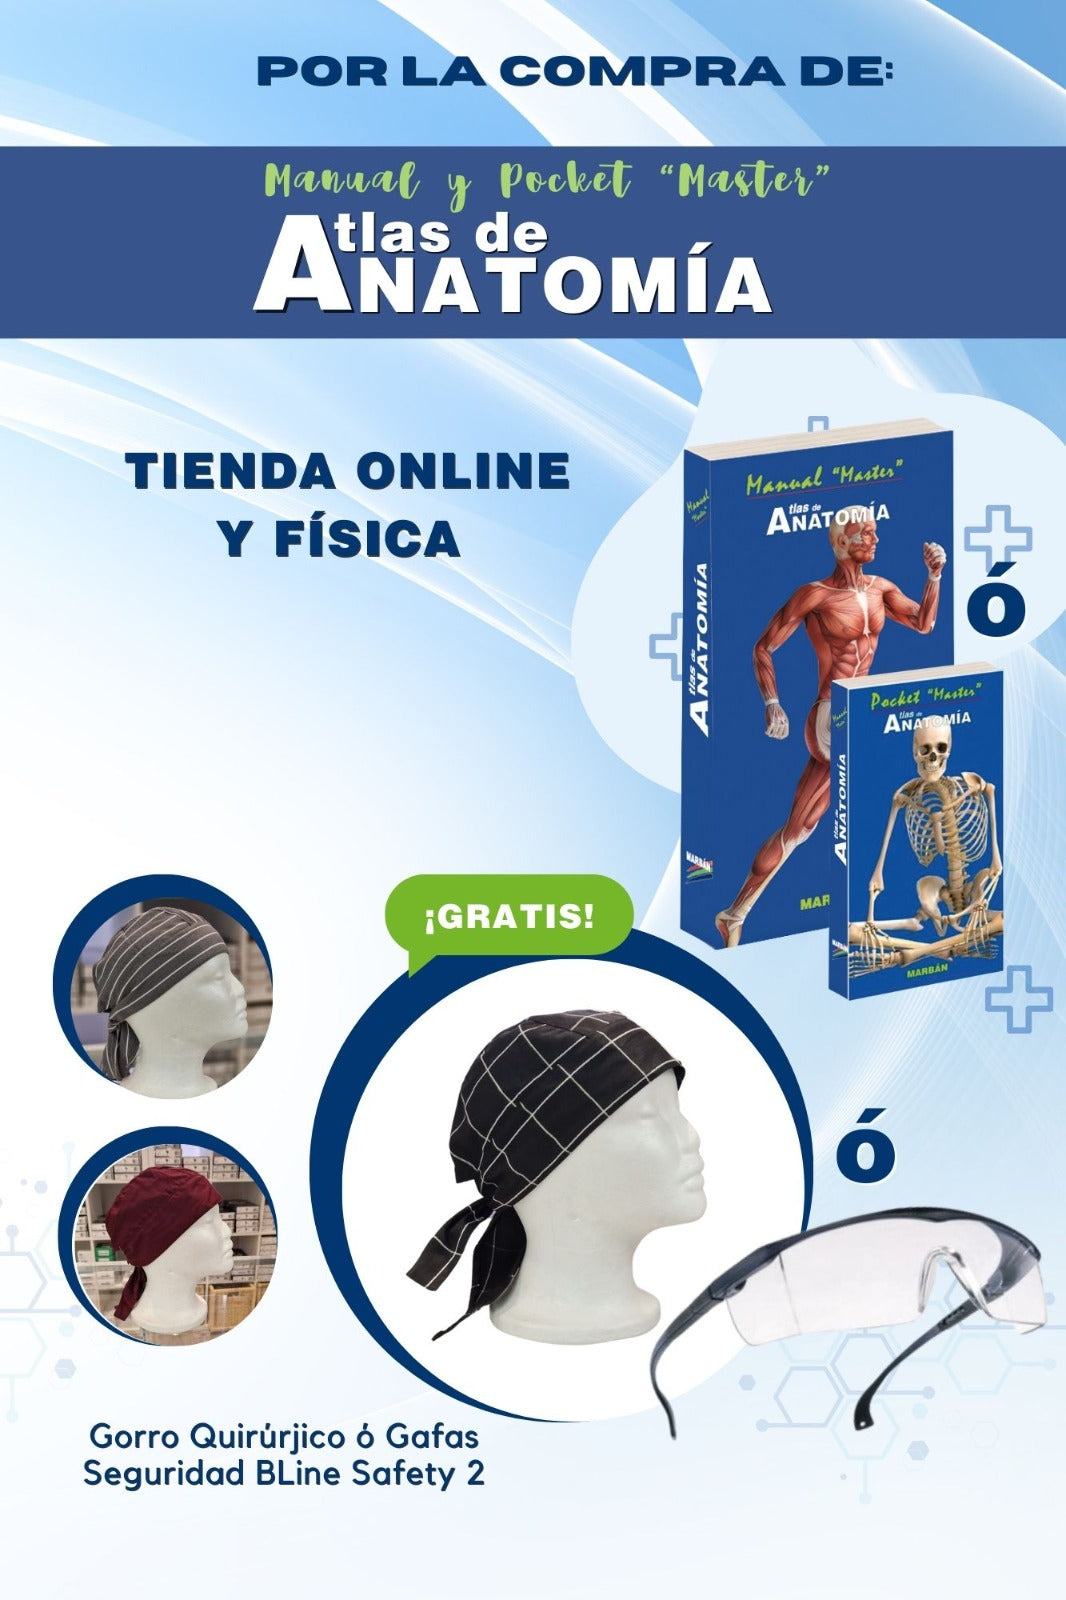 Master Atlas de Anatomía - Manual